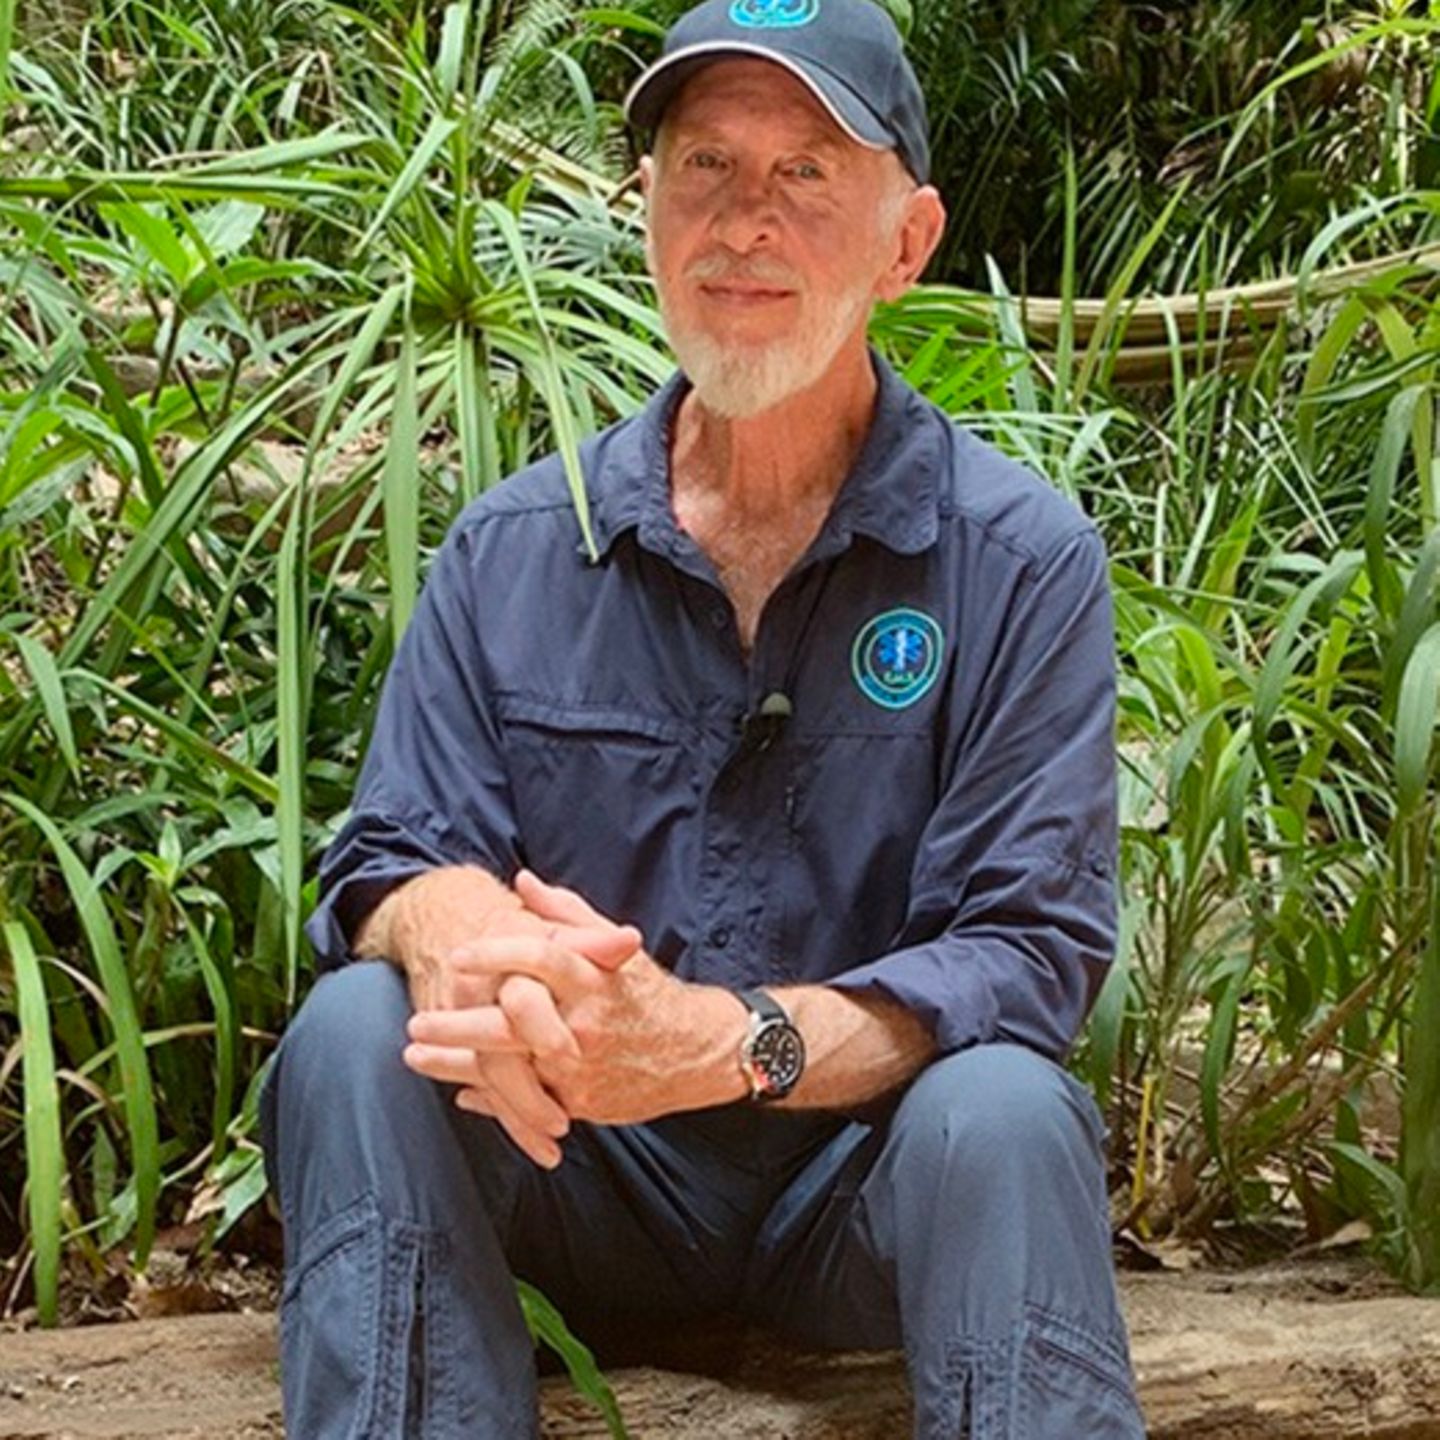 Dschungelcamp 2020 Wahrend Dr Bob Im Camp Ist Konnte Sein Heim Abbrennen Stern De